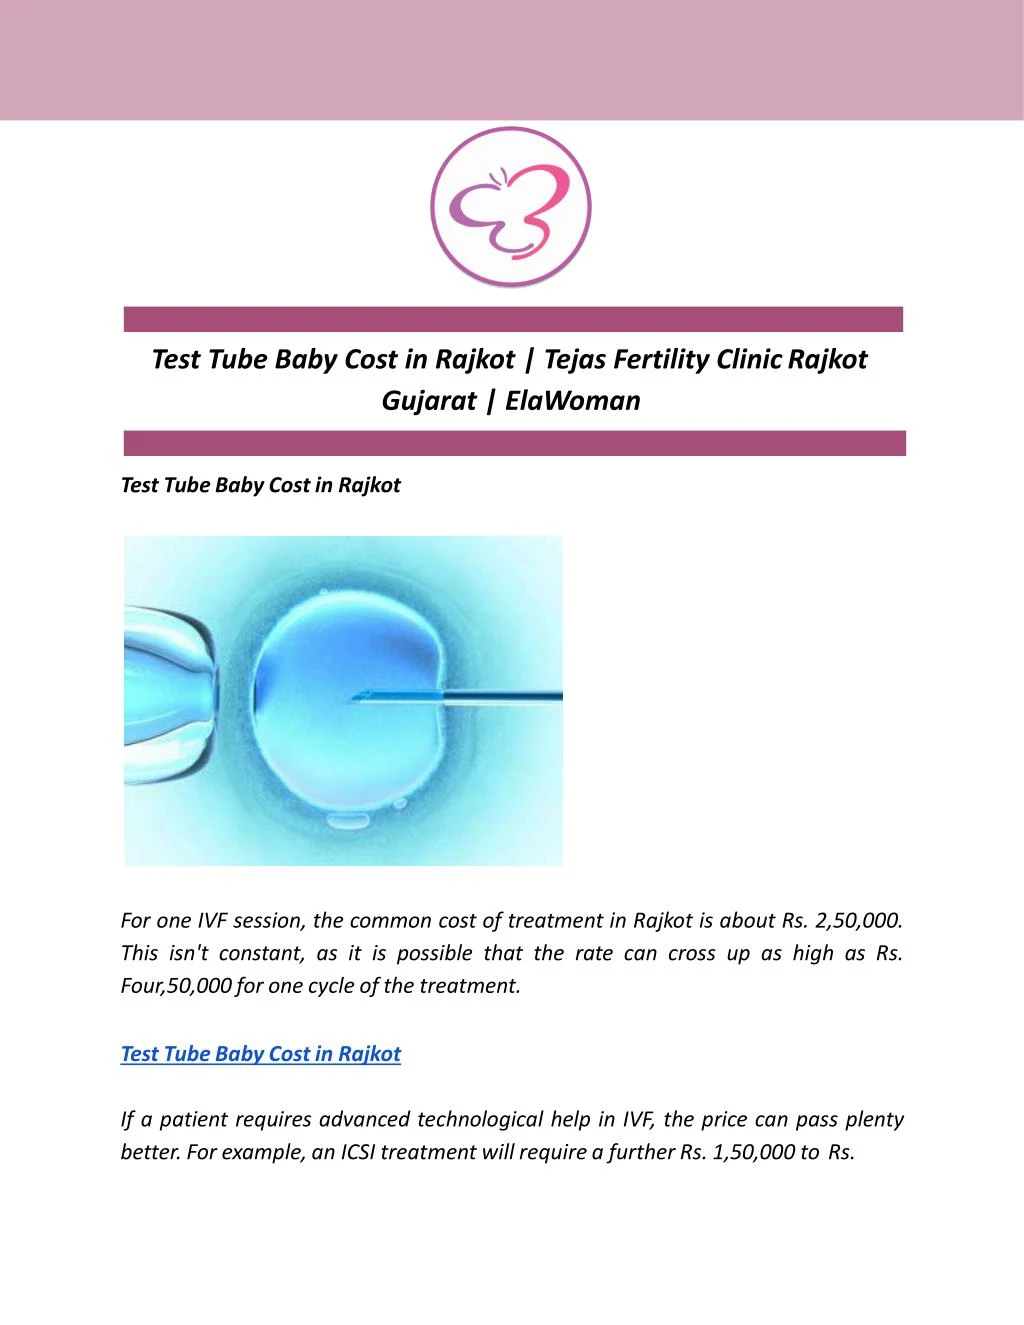 test tube baby cost in rajkot tejas fertility